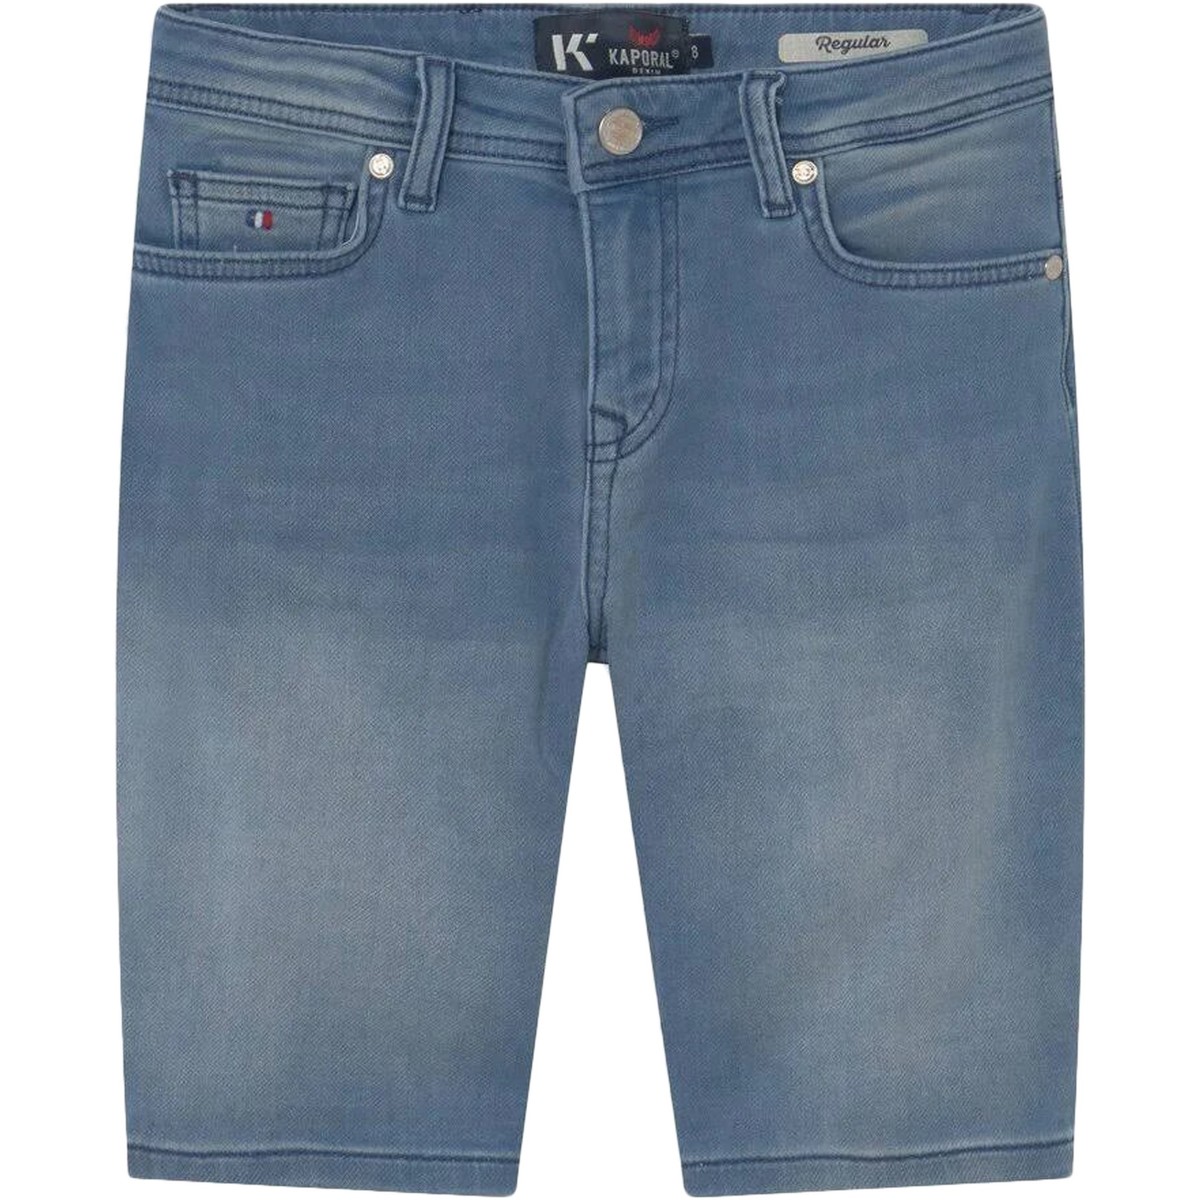 Kaporal Bleu Short Jeans Deco vXT9SWkw